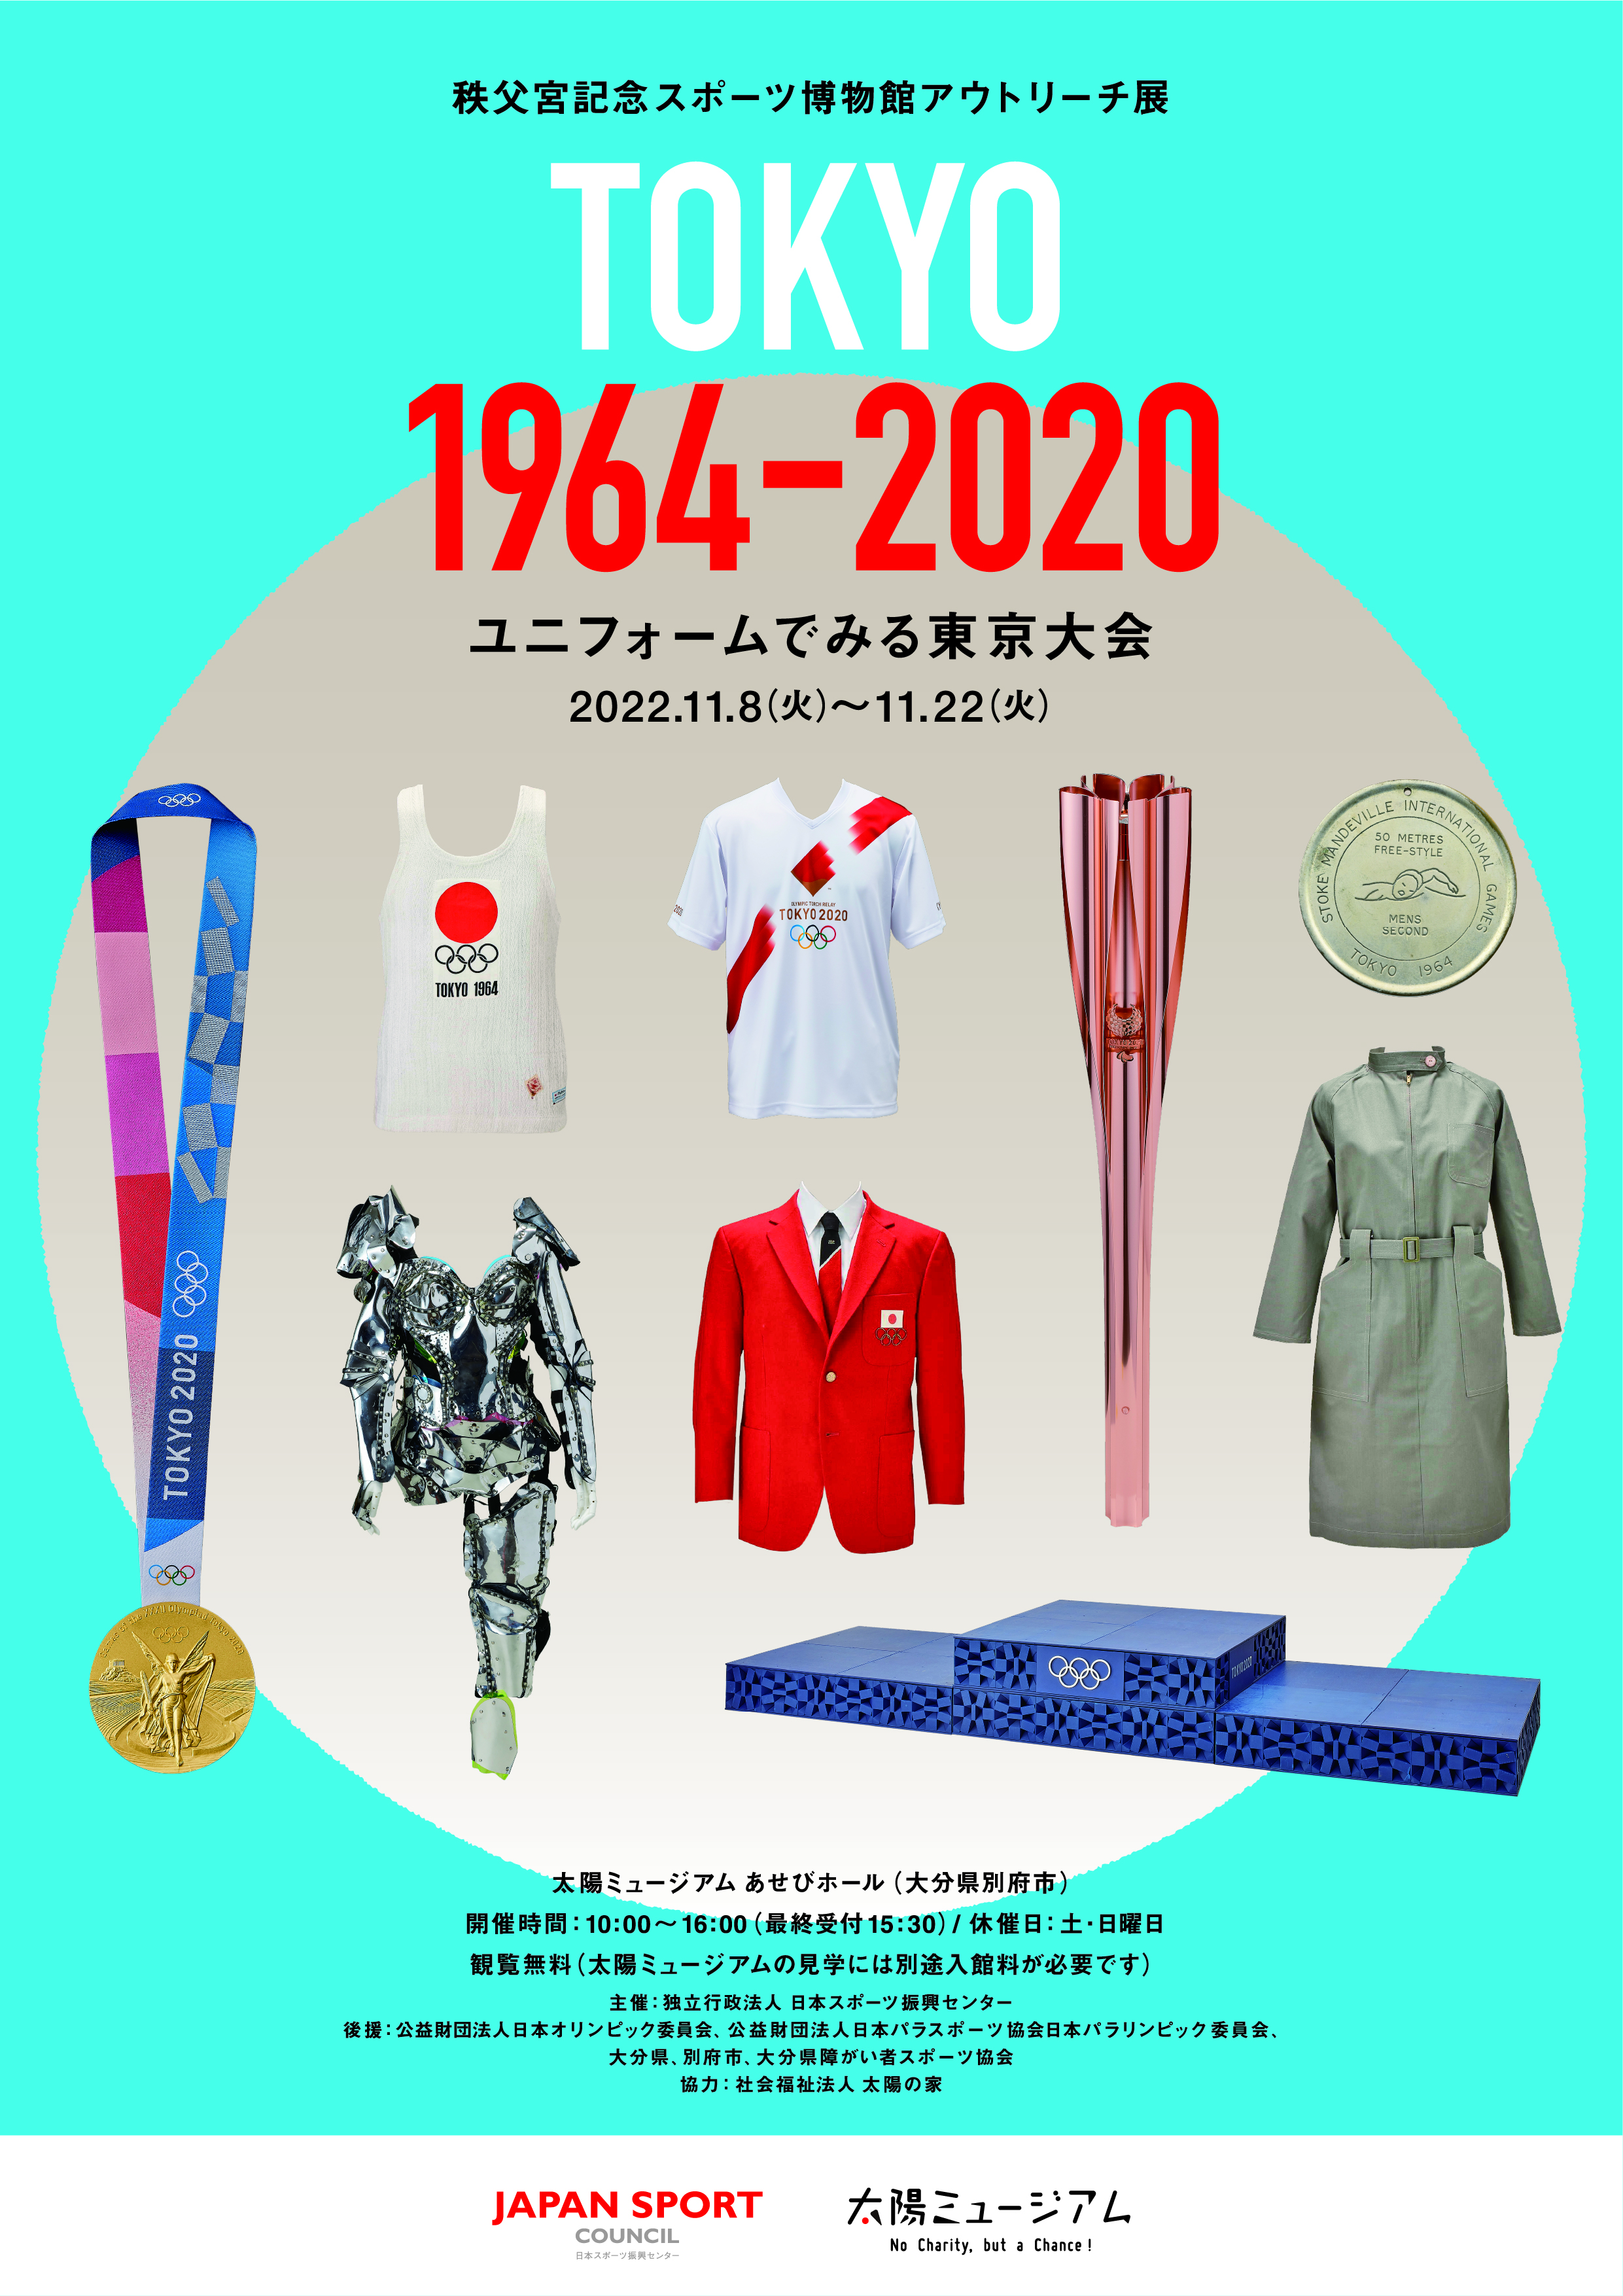 アウトリーチ展「TOKYO 1964－2020 ユニフォームでみる東京大会」大分会場のチラシ表面